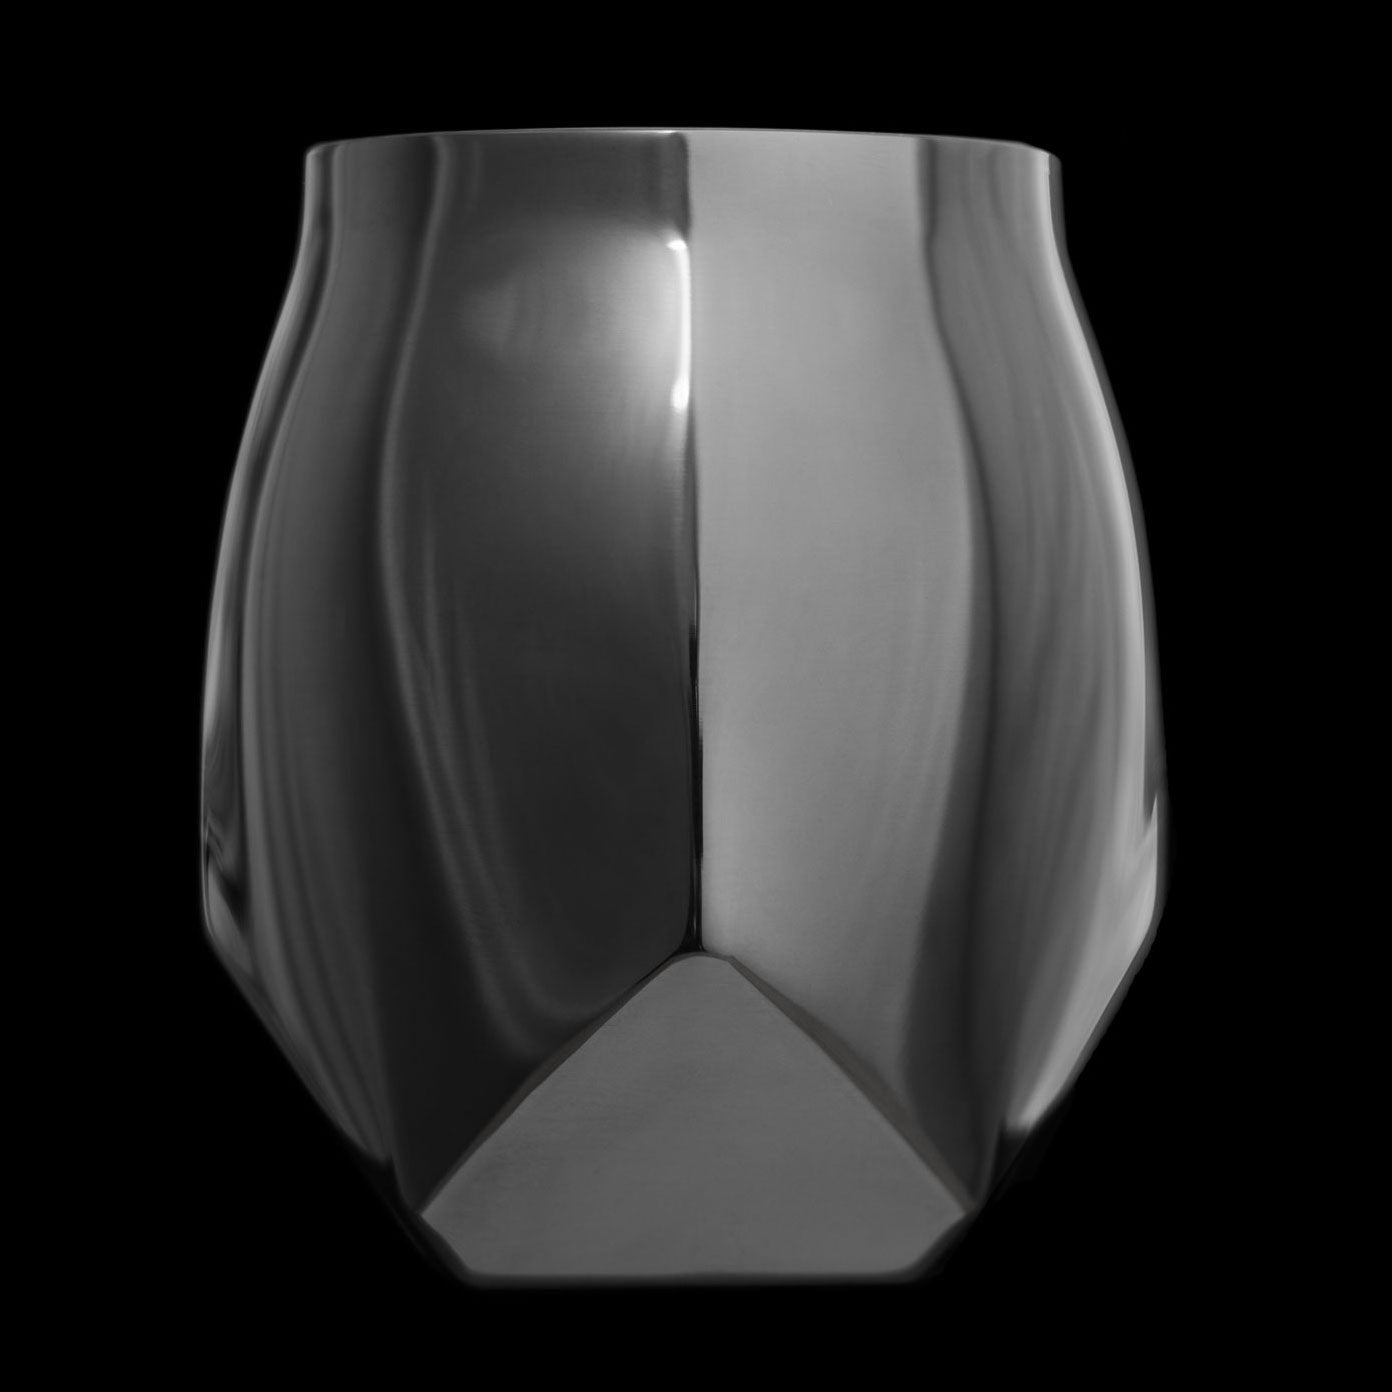 Black steel drinking vessel